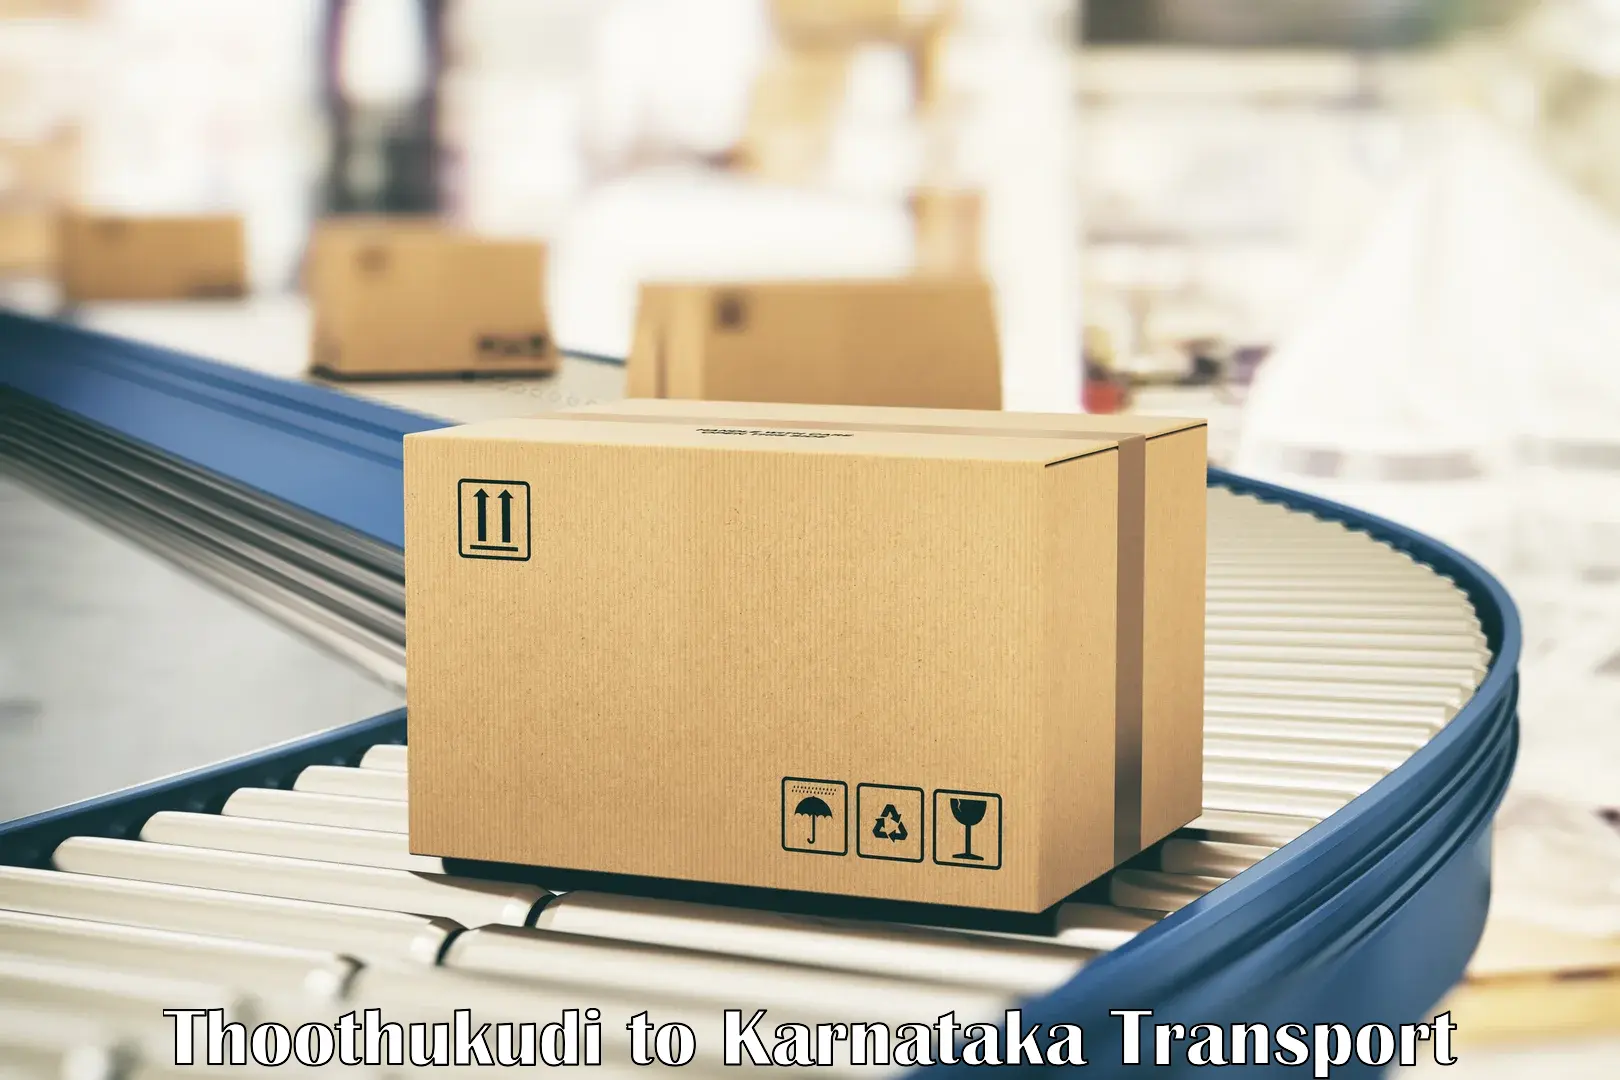 Daily transport service Thoothukudi to Srirangapatna